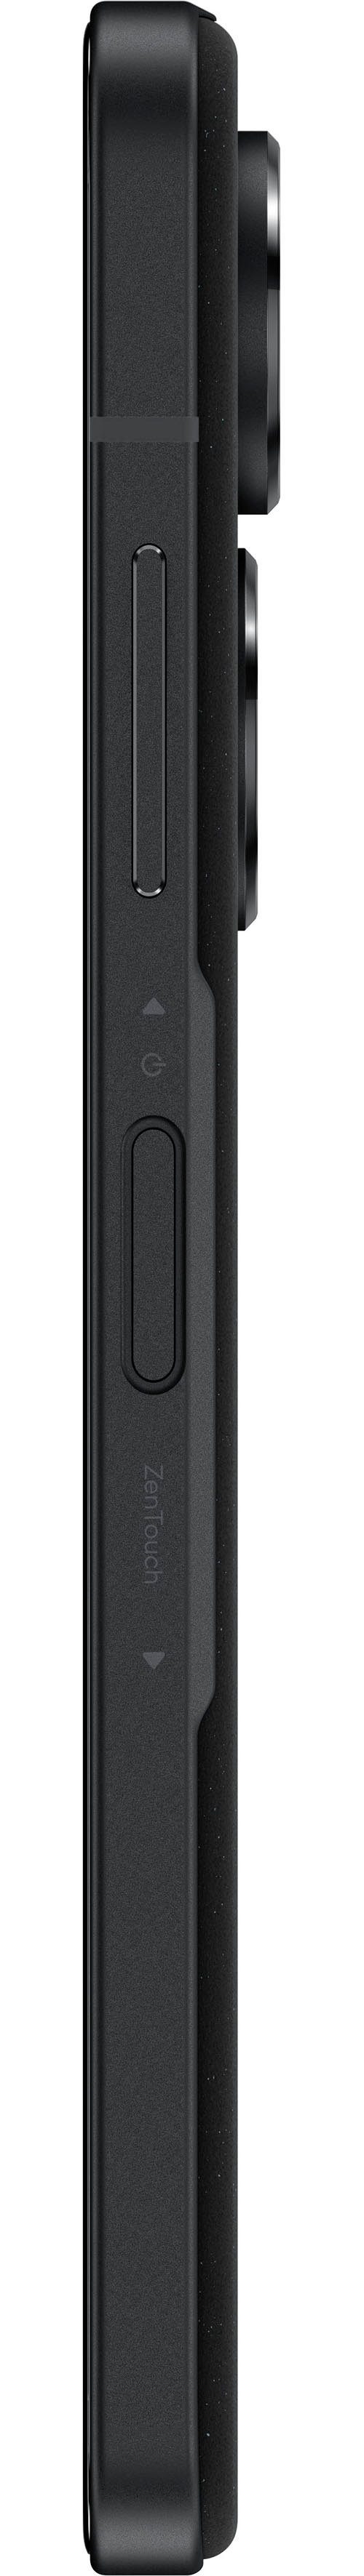 Asus ZENFONE 10 Smartphone (14,98 512 GB 50 Zoll, MP Speicherplatz, Kamera) cm/5,9 schwarz